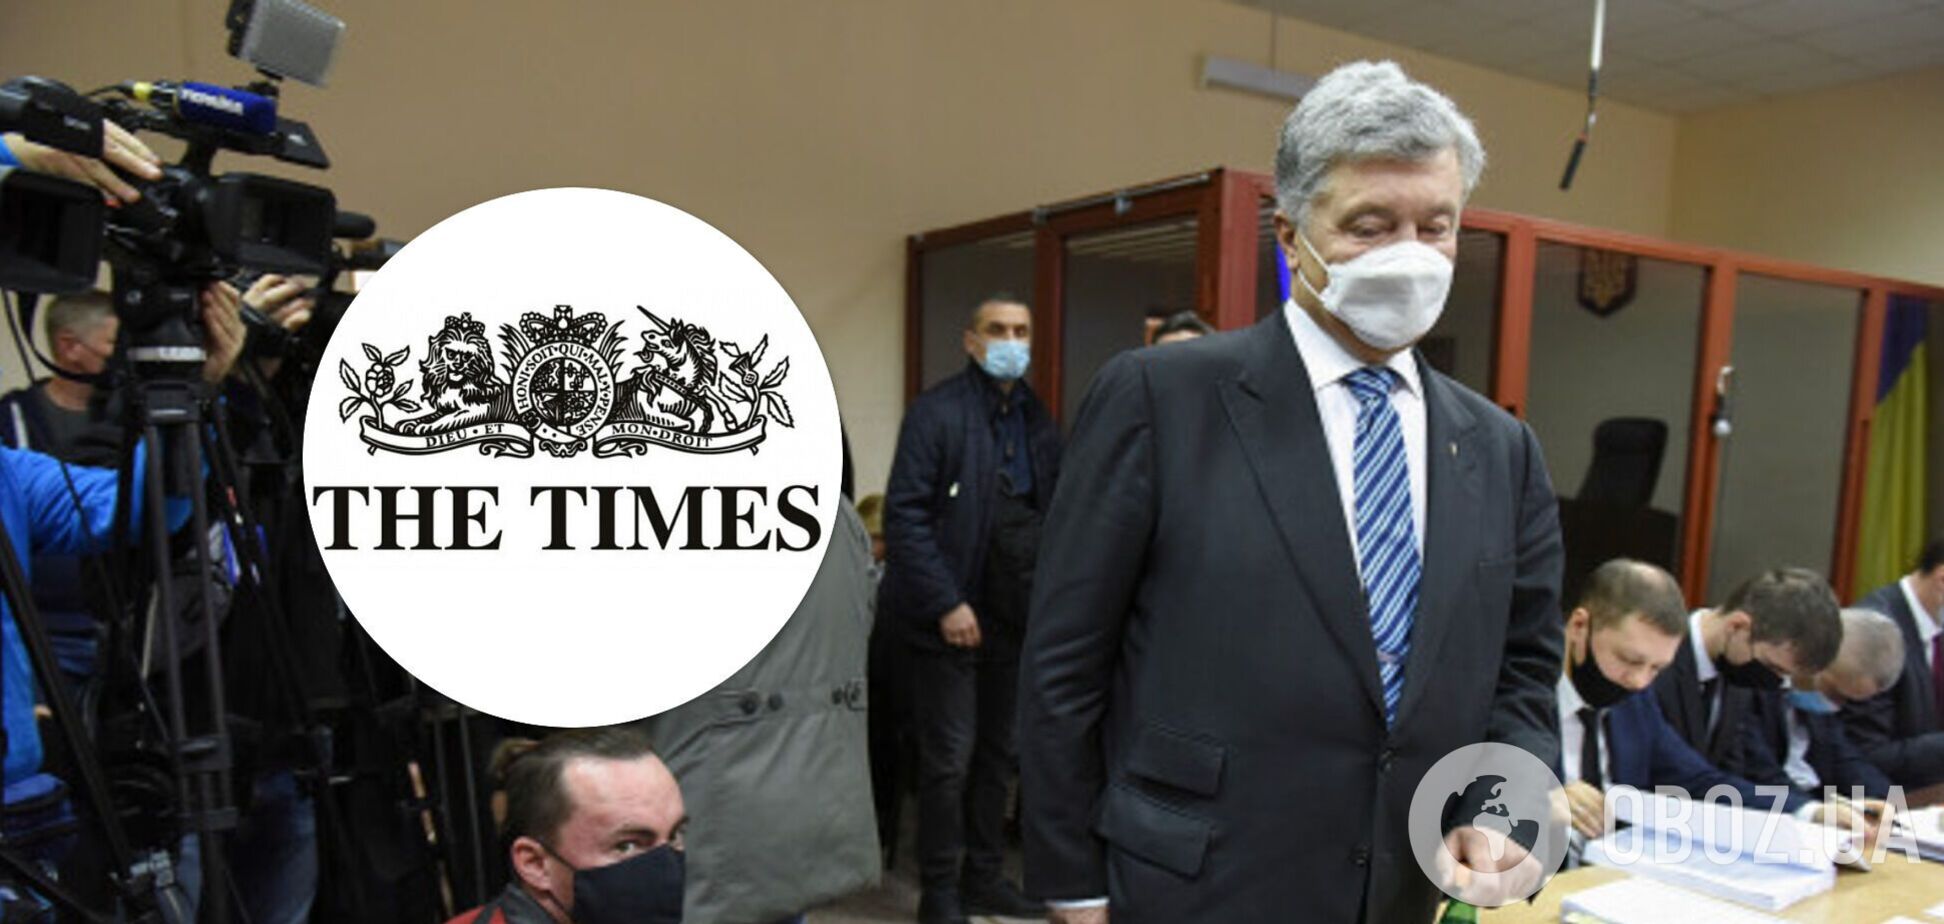 Дело Порошенко крайне политизировано и рискует расколоть Украину – The Times